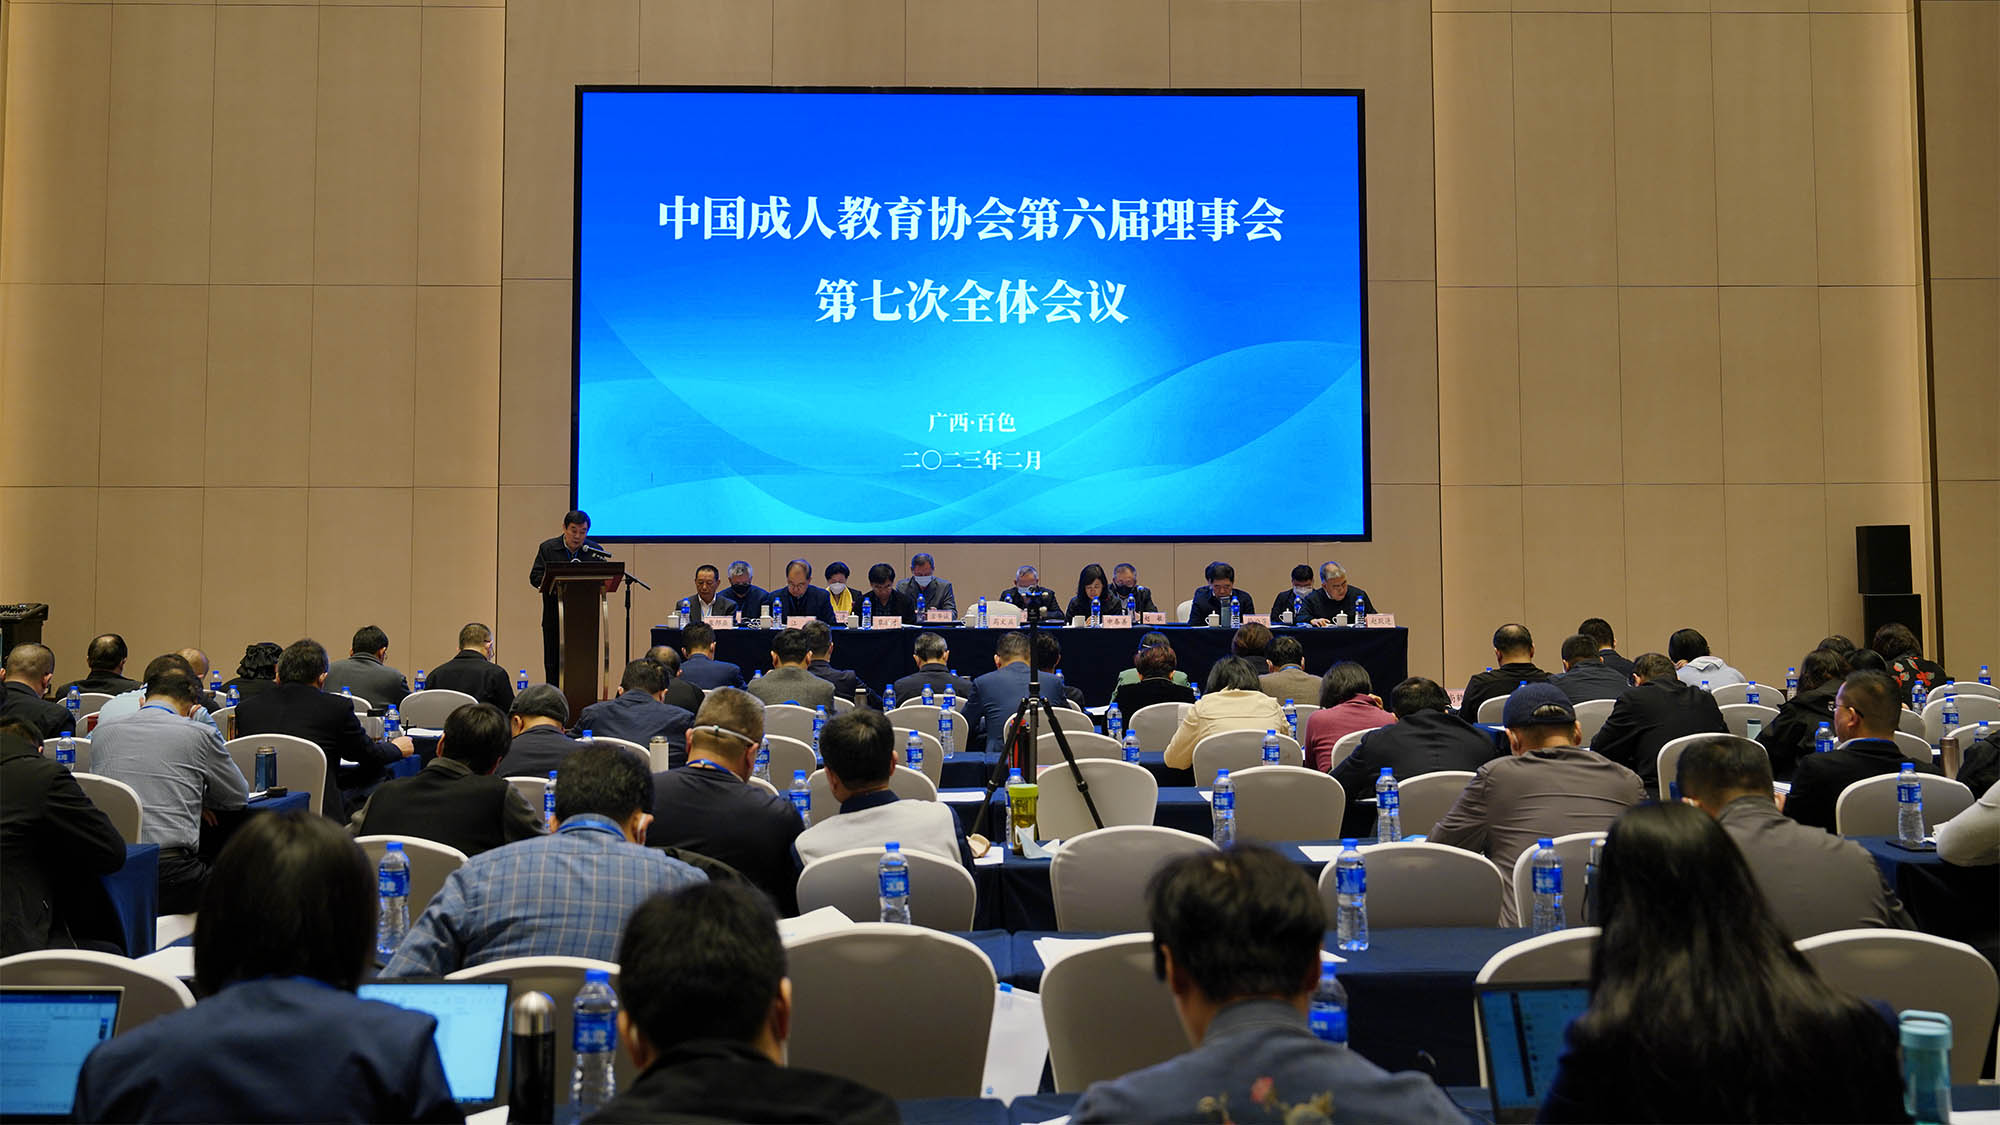 中国成人教育协会第六届理事会第七次全体会议在广西百色市召开